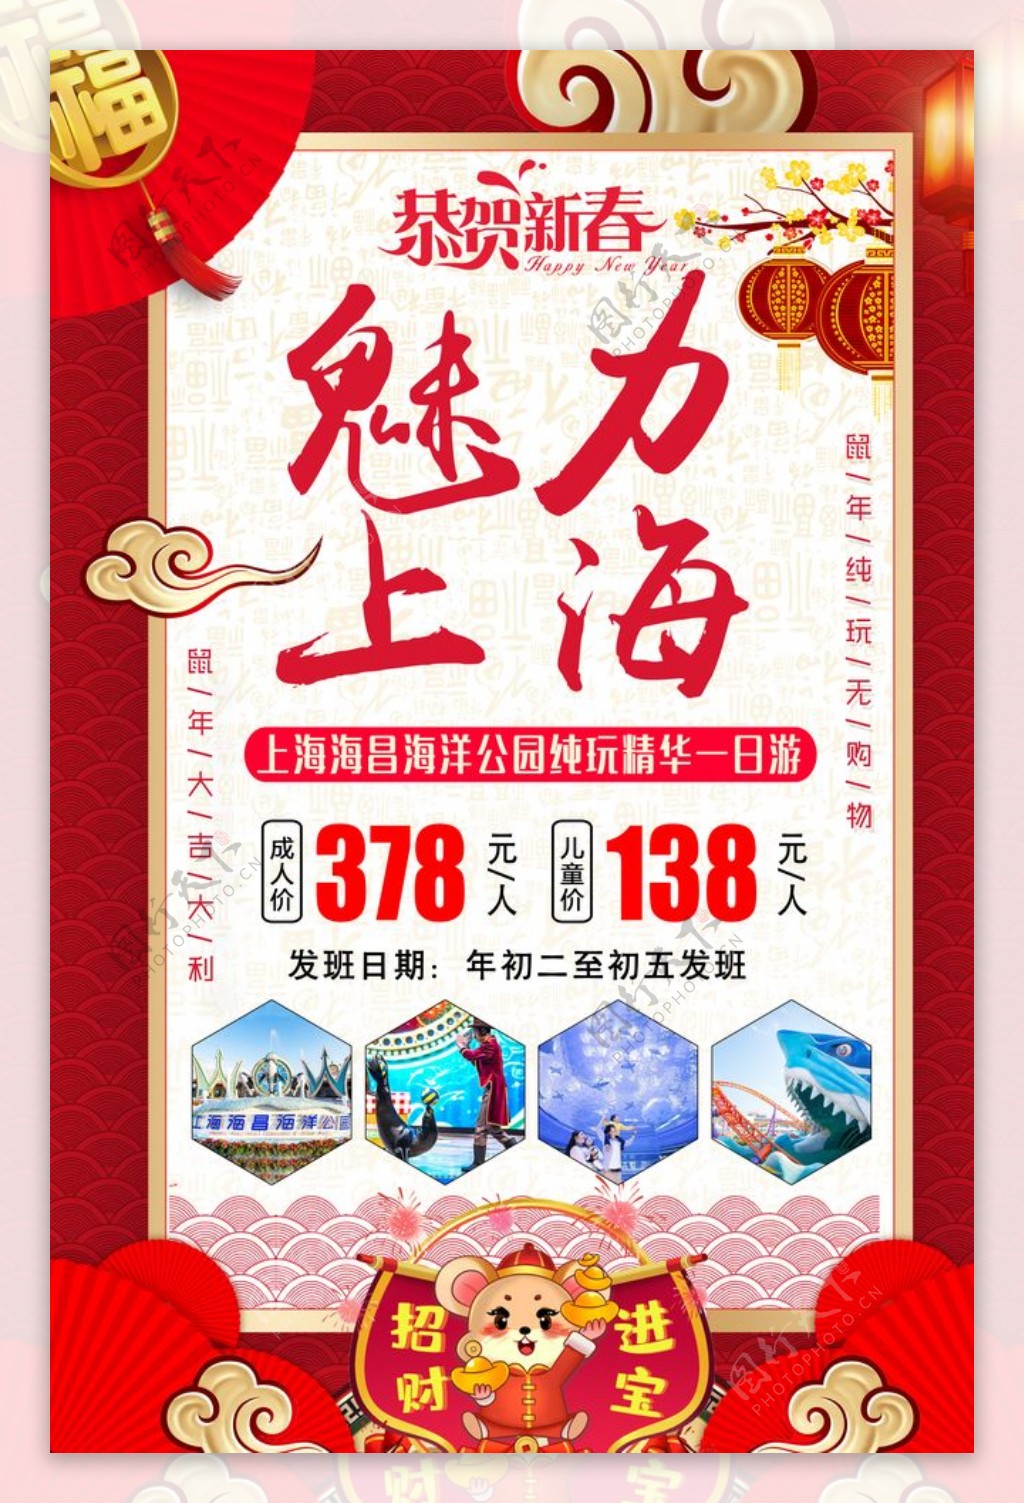 魅力上海旅游海报